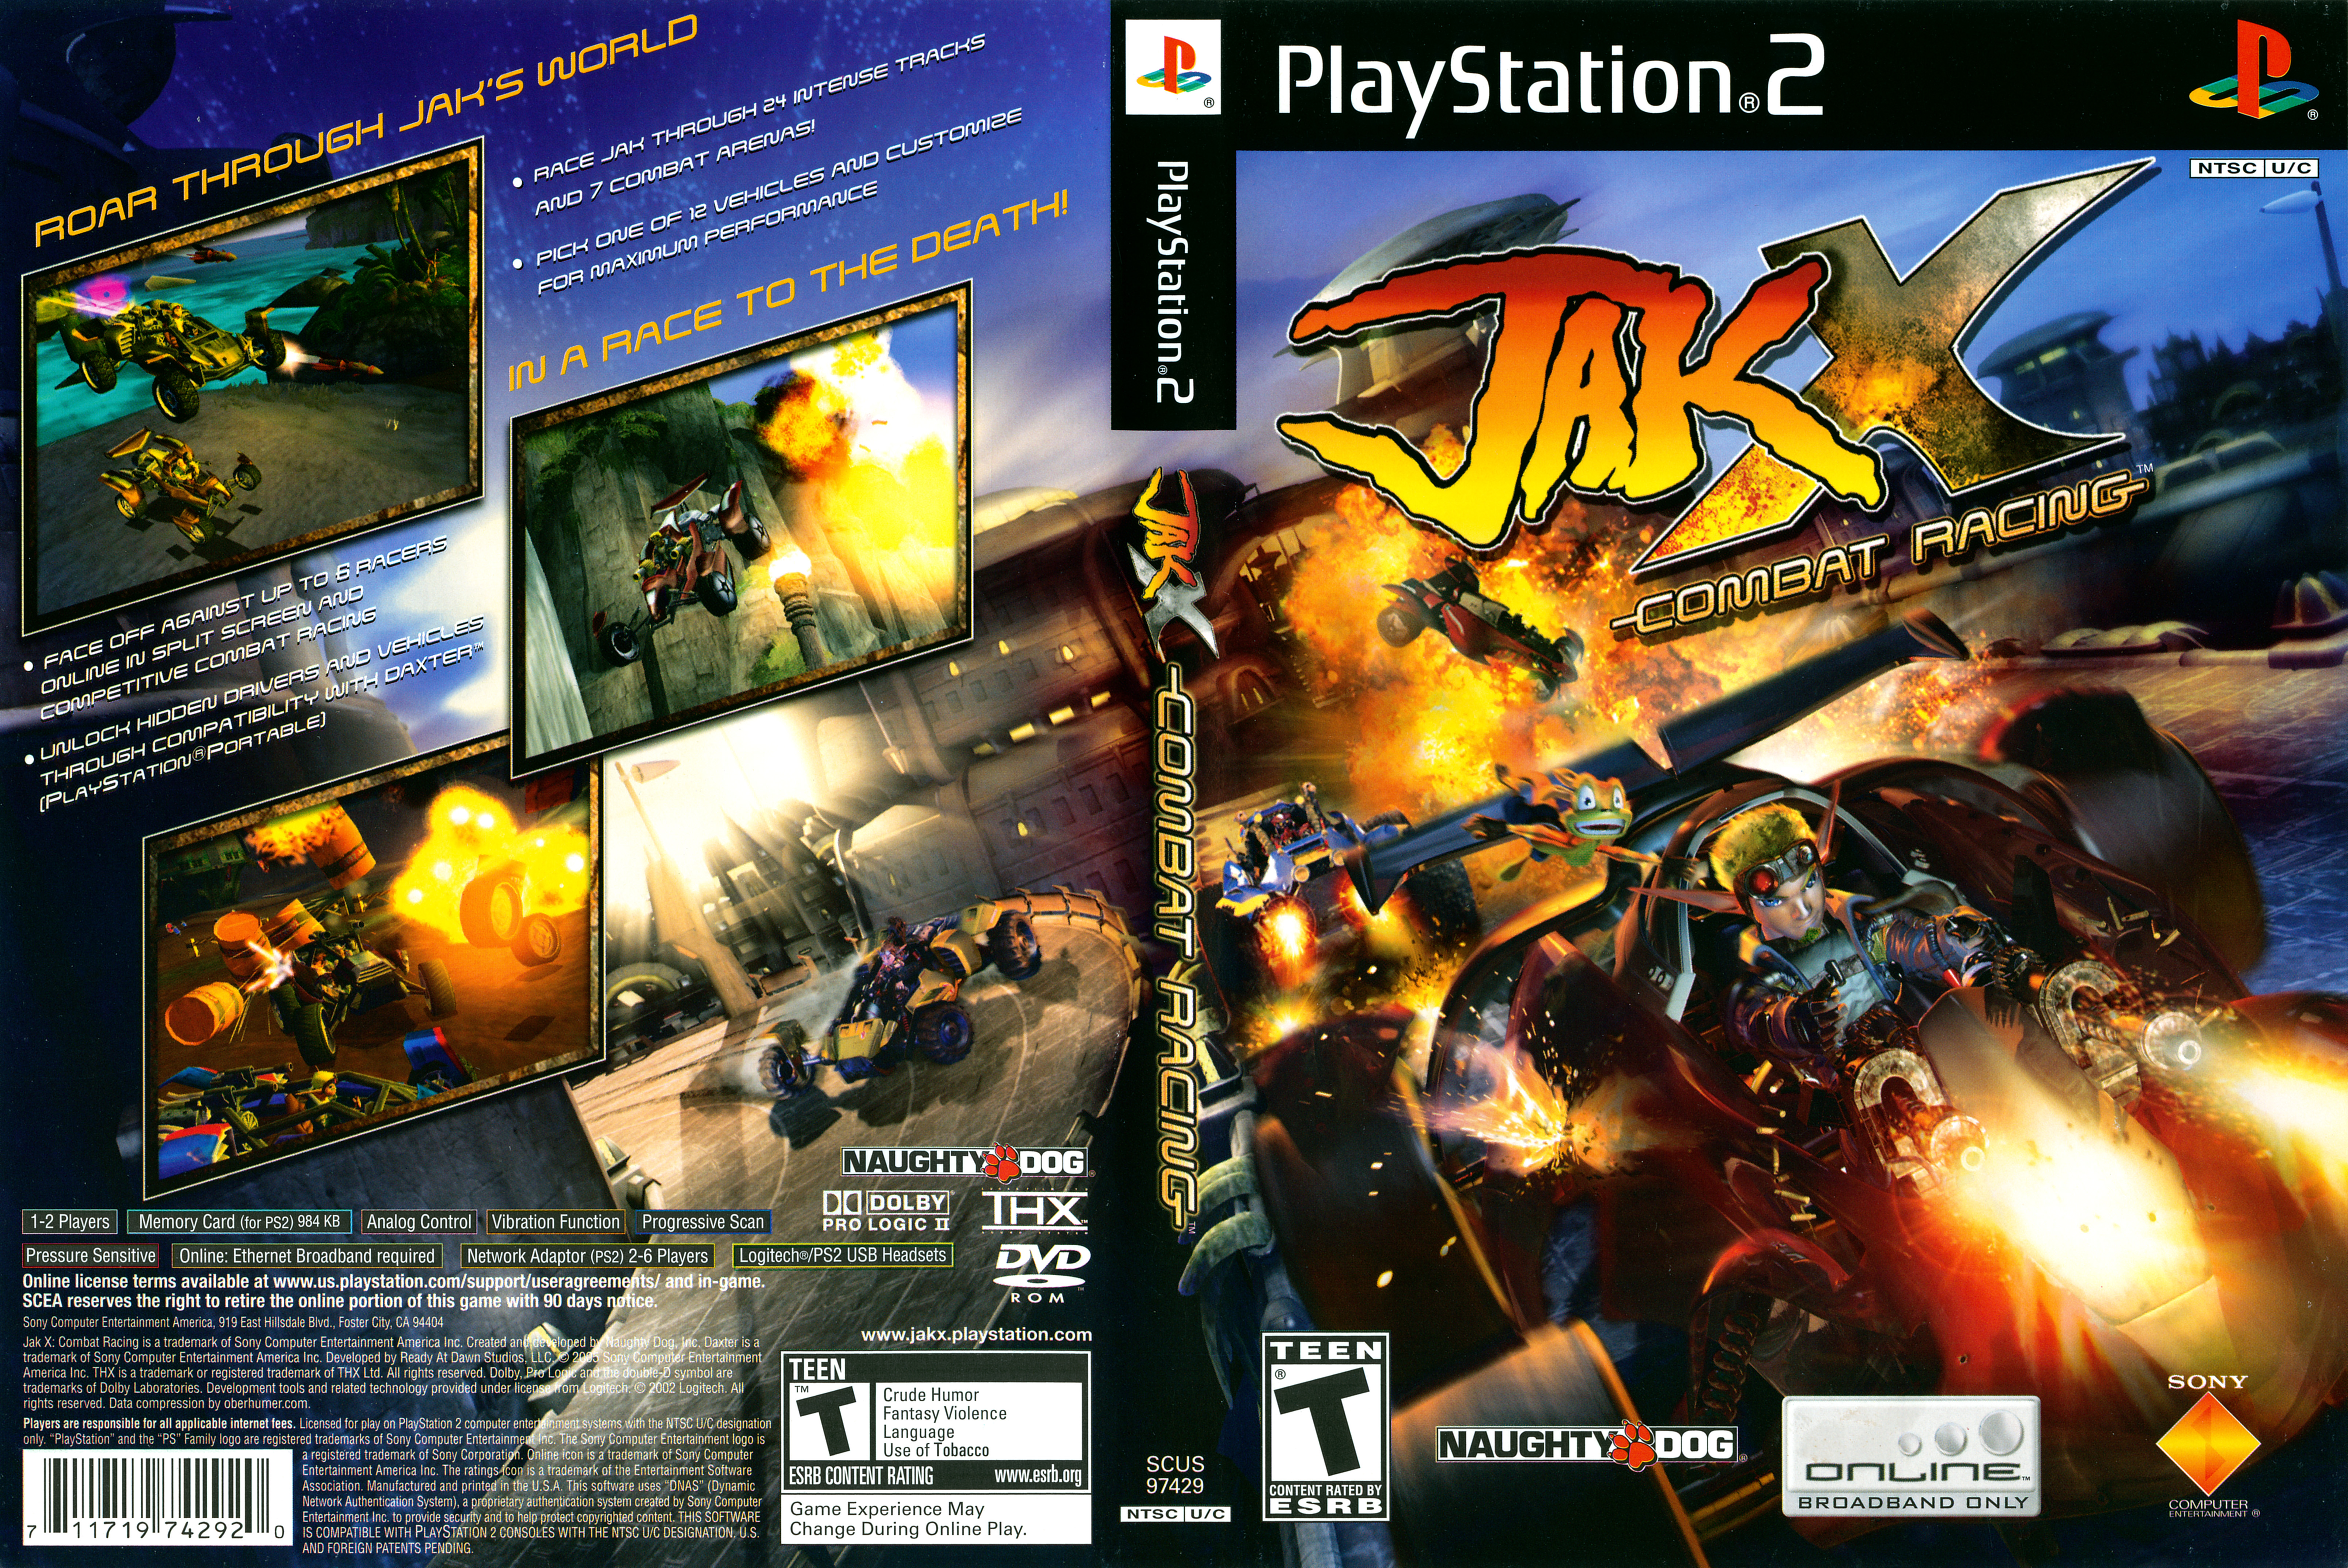 Запускай пс 2. Jak x Combat Racing ps2. Jak x Combat Racing ps2 Cover. Sony PLAYSTATION 2 ps2. Jak II ps2 обложка.